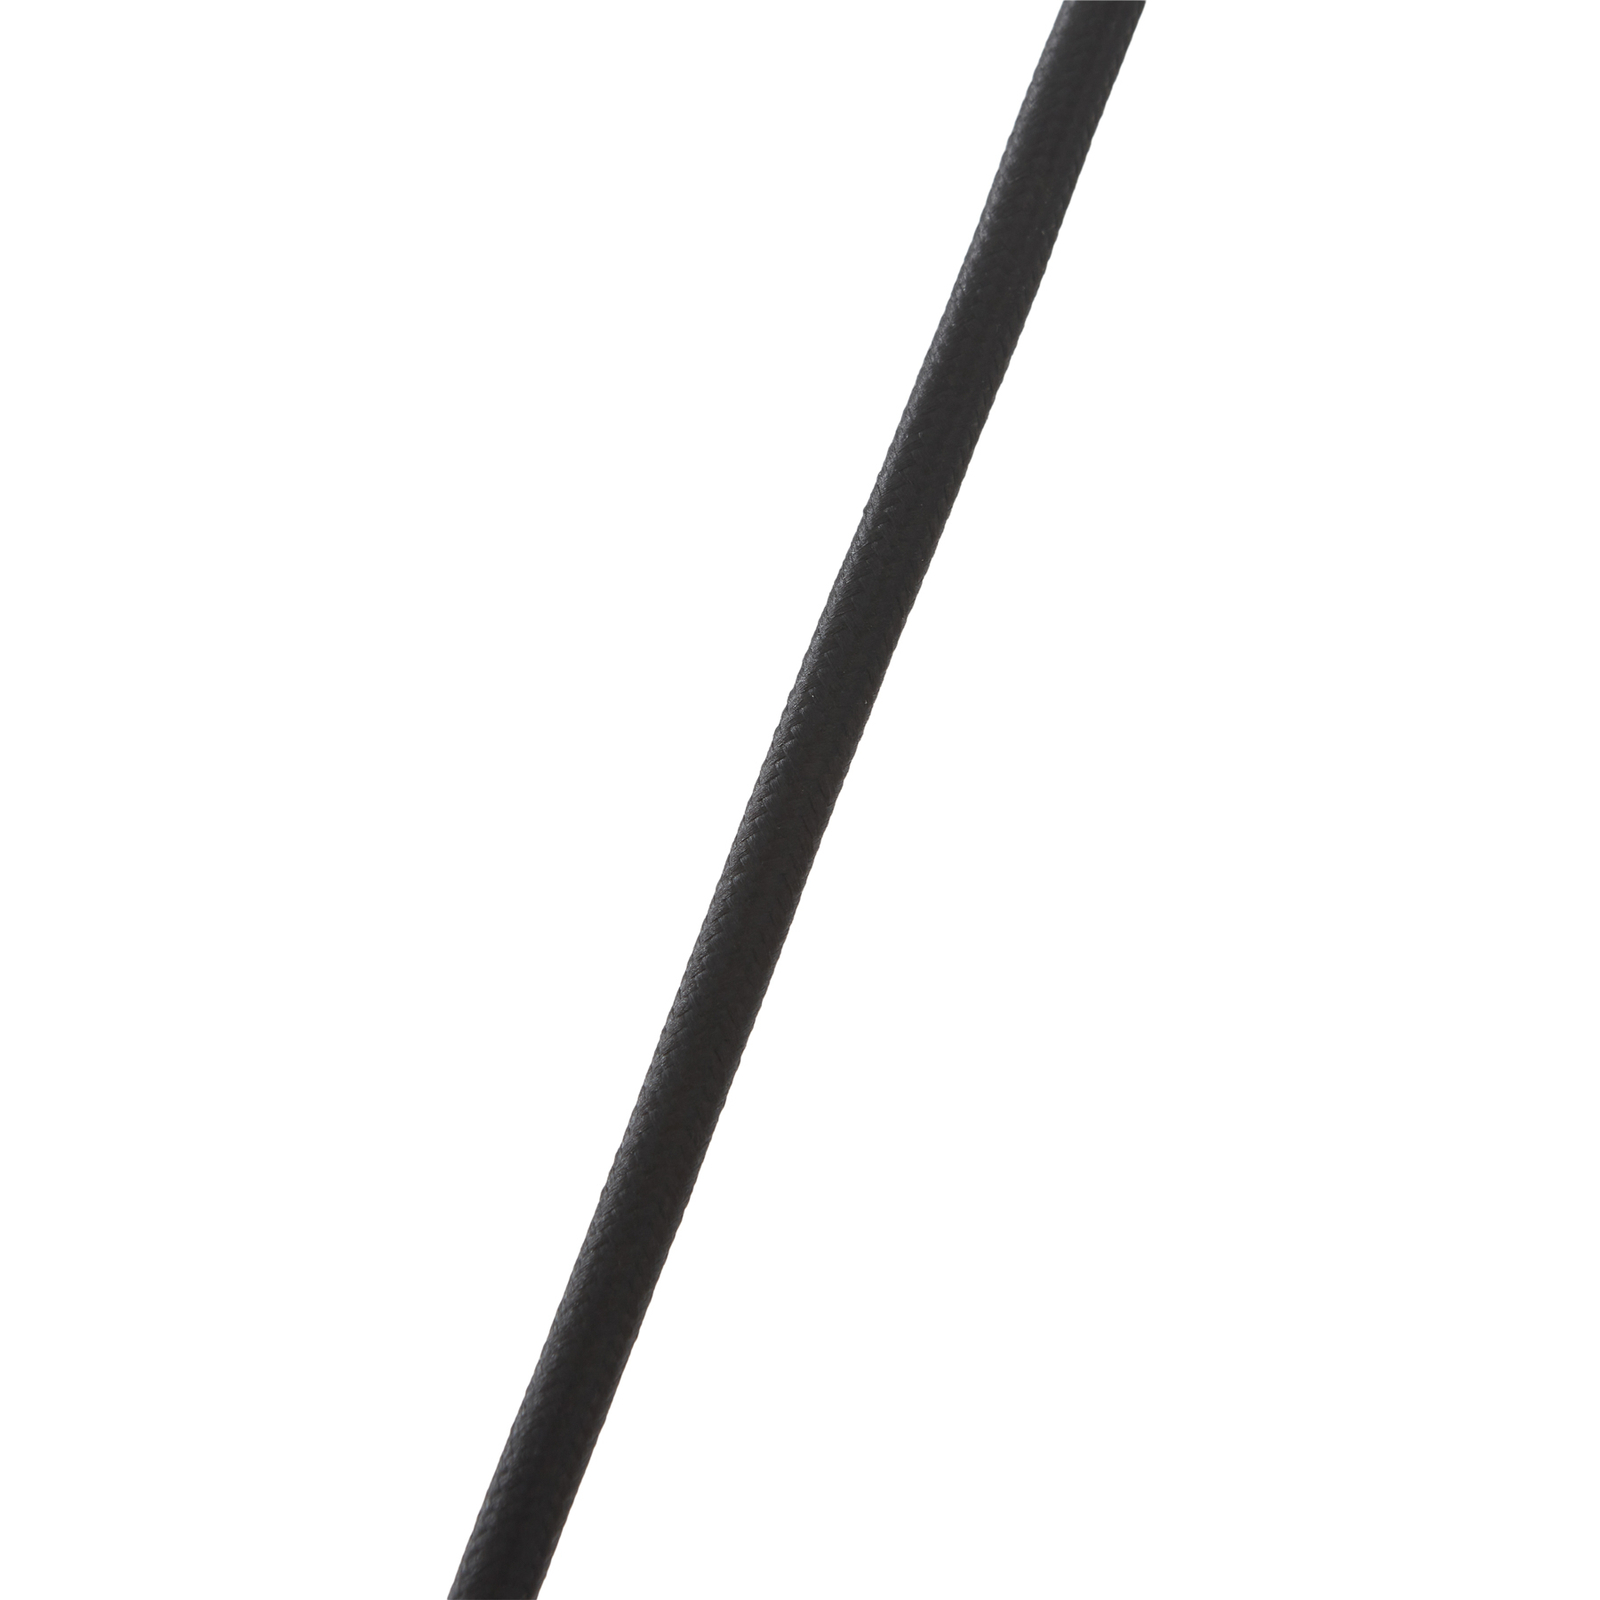 Lucande hanglamp Aeloria, koper, Ø 25 cm, ijzer, E27